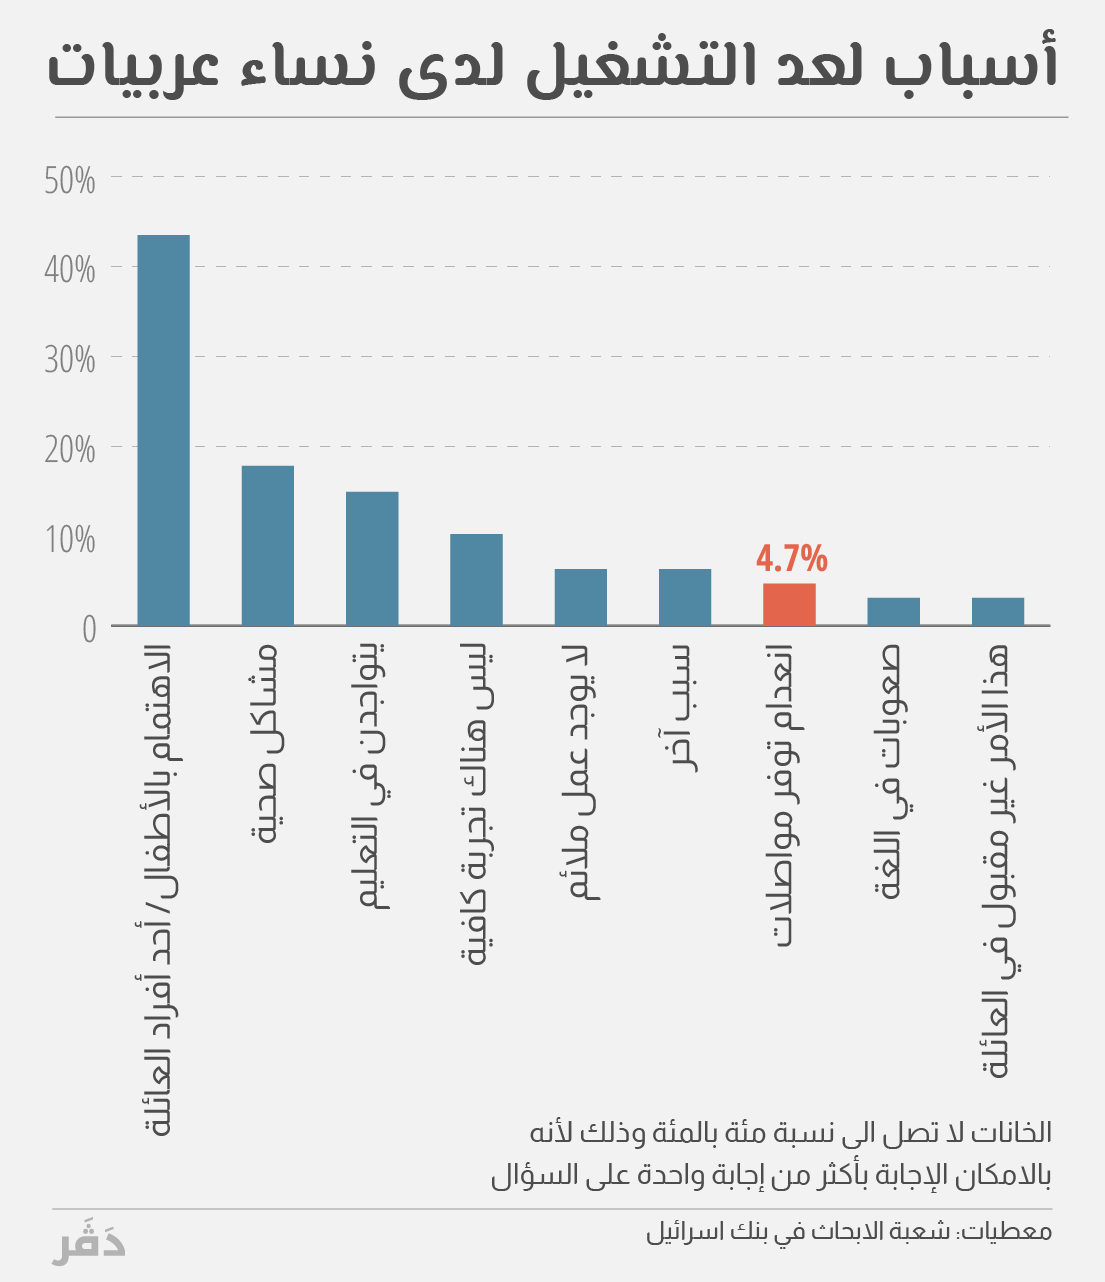 أسباب عدم التشغيل لدى نساء عربيات (معطيات: شعبة الابحاث في بنك اسرائيل، تصميم : ايداه)